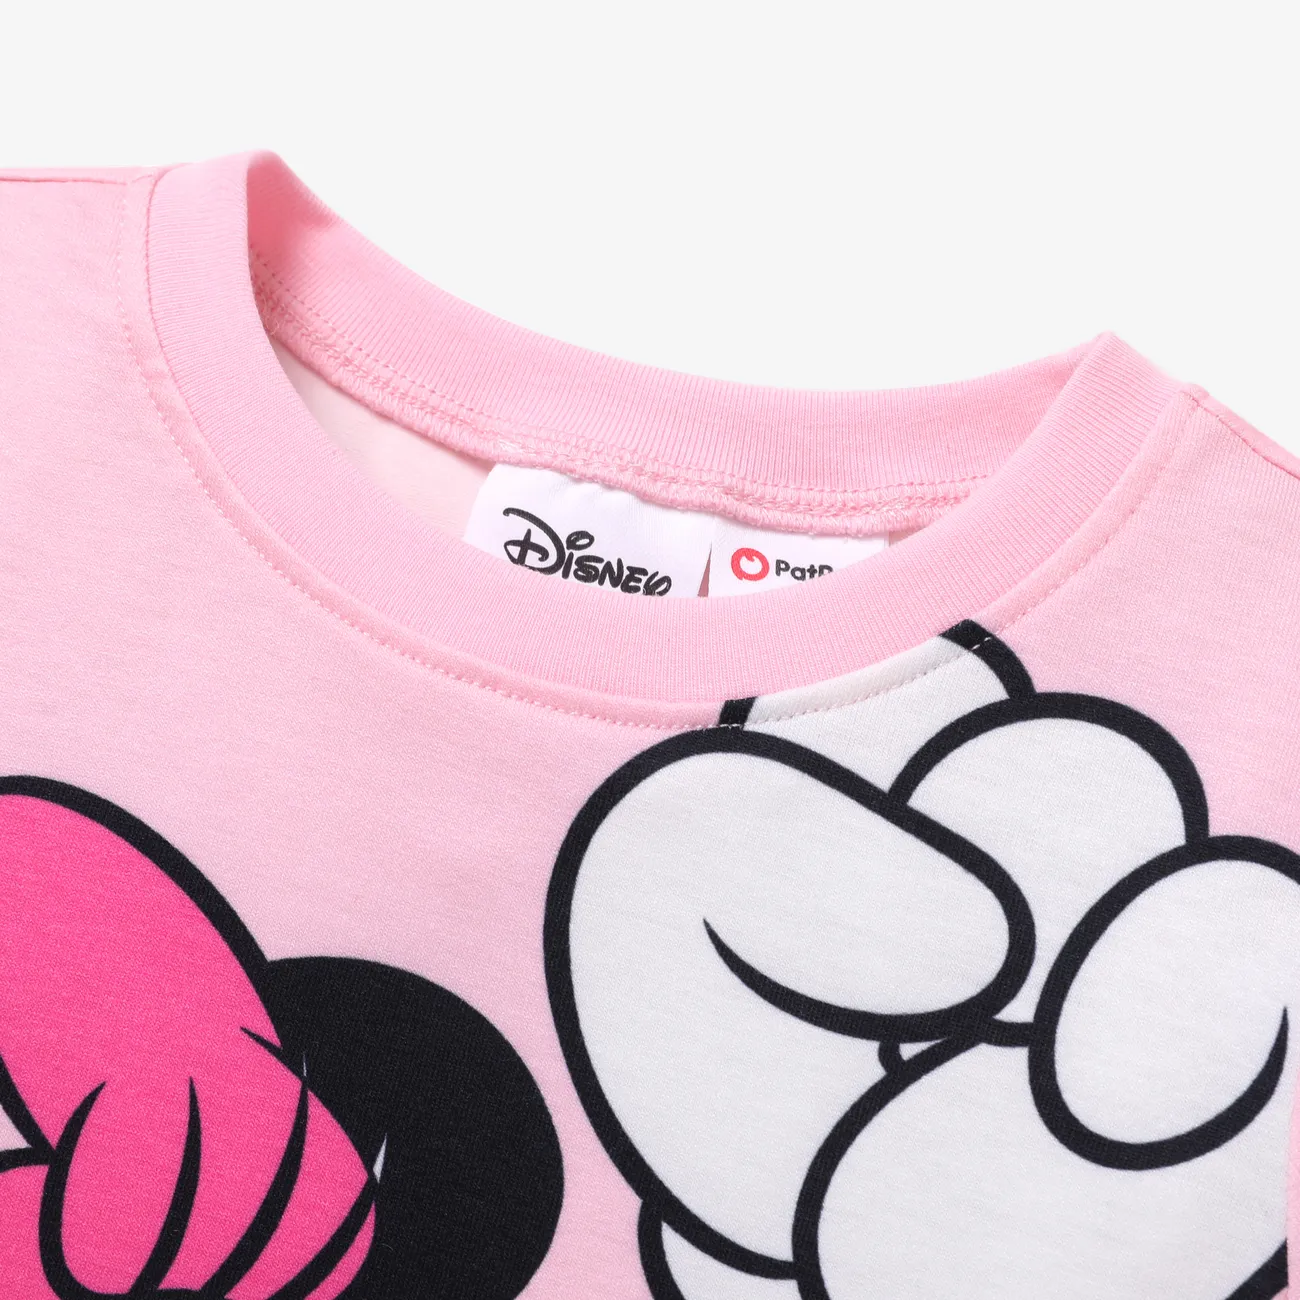 Disney Mickey und Freunde 1pc Kleinkind / Kind Mädchen / Junge Figur gebunden / Streifen / Bunt Druck Naia™ Kurzarm-T-Shirt Hell-Pink big image 1